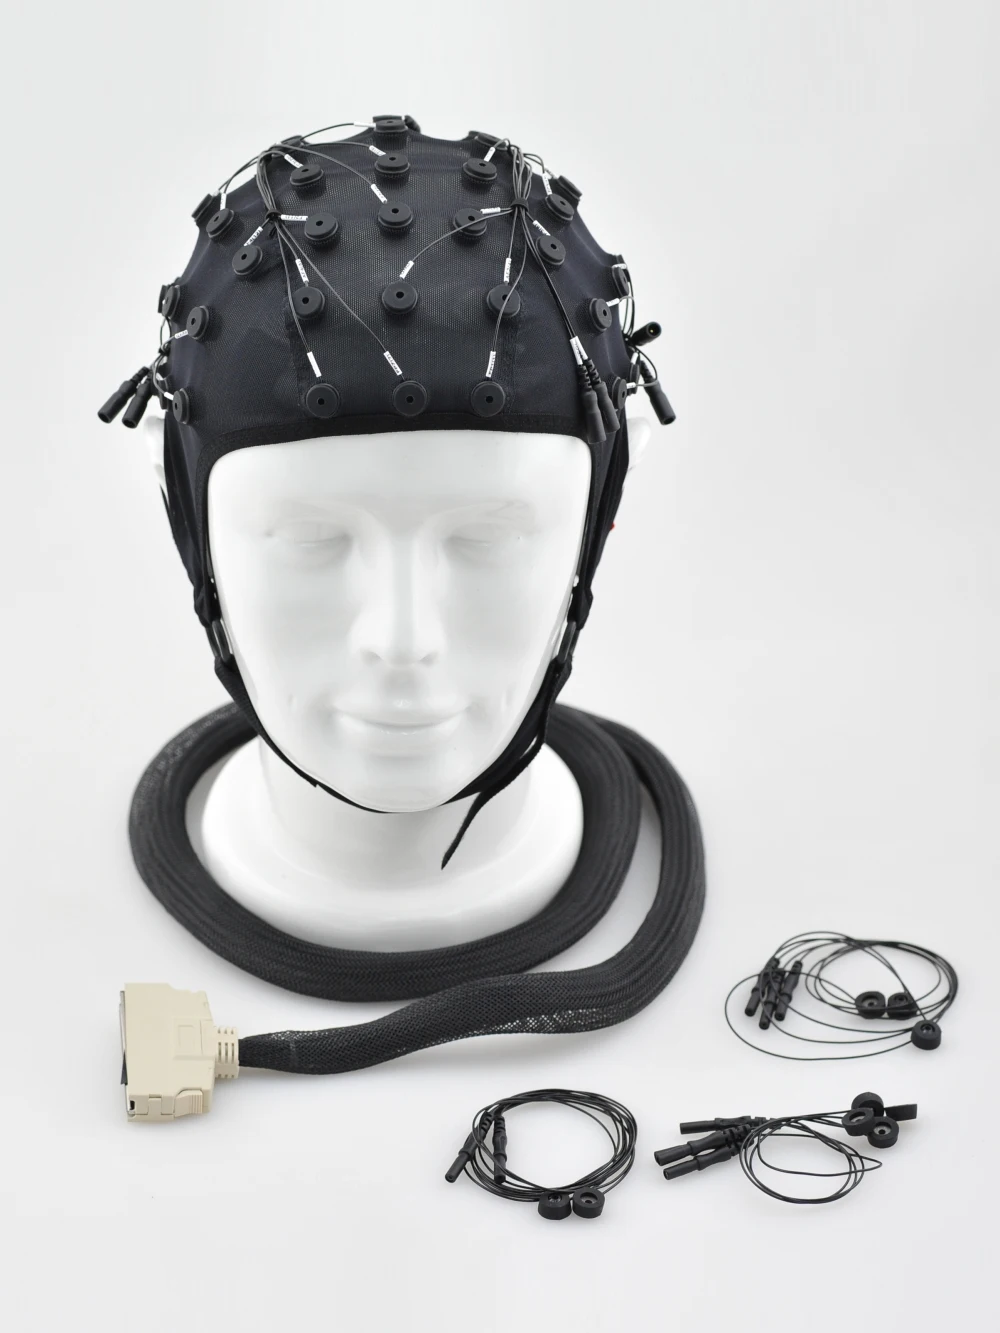 Шлем для ээг. Электродная шапочка для ЭЭГ. Электроэнцефалограф Air-EEG. Шлем ЭЭГ спектр. РЭГ И ЭЭГ.